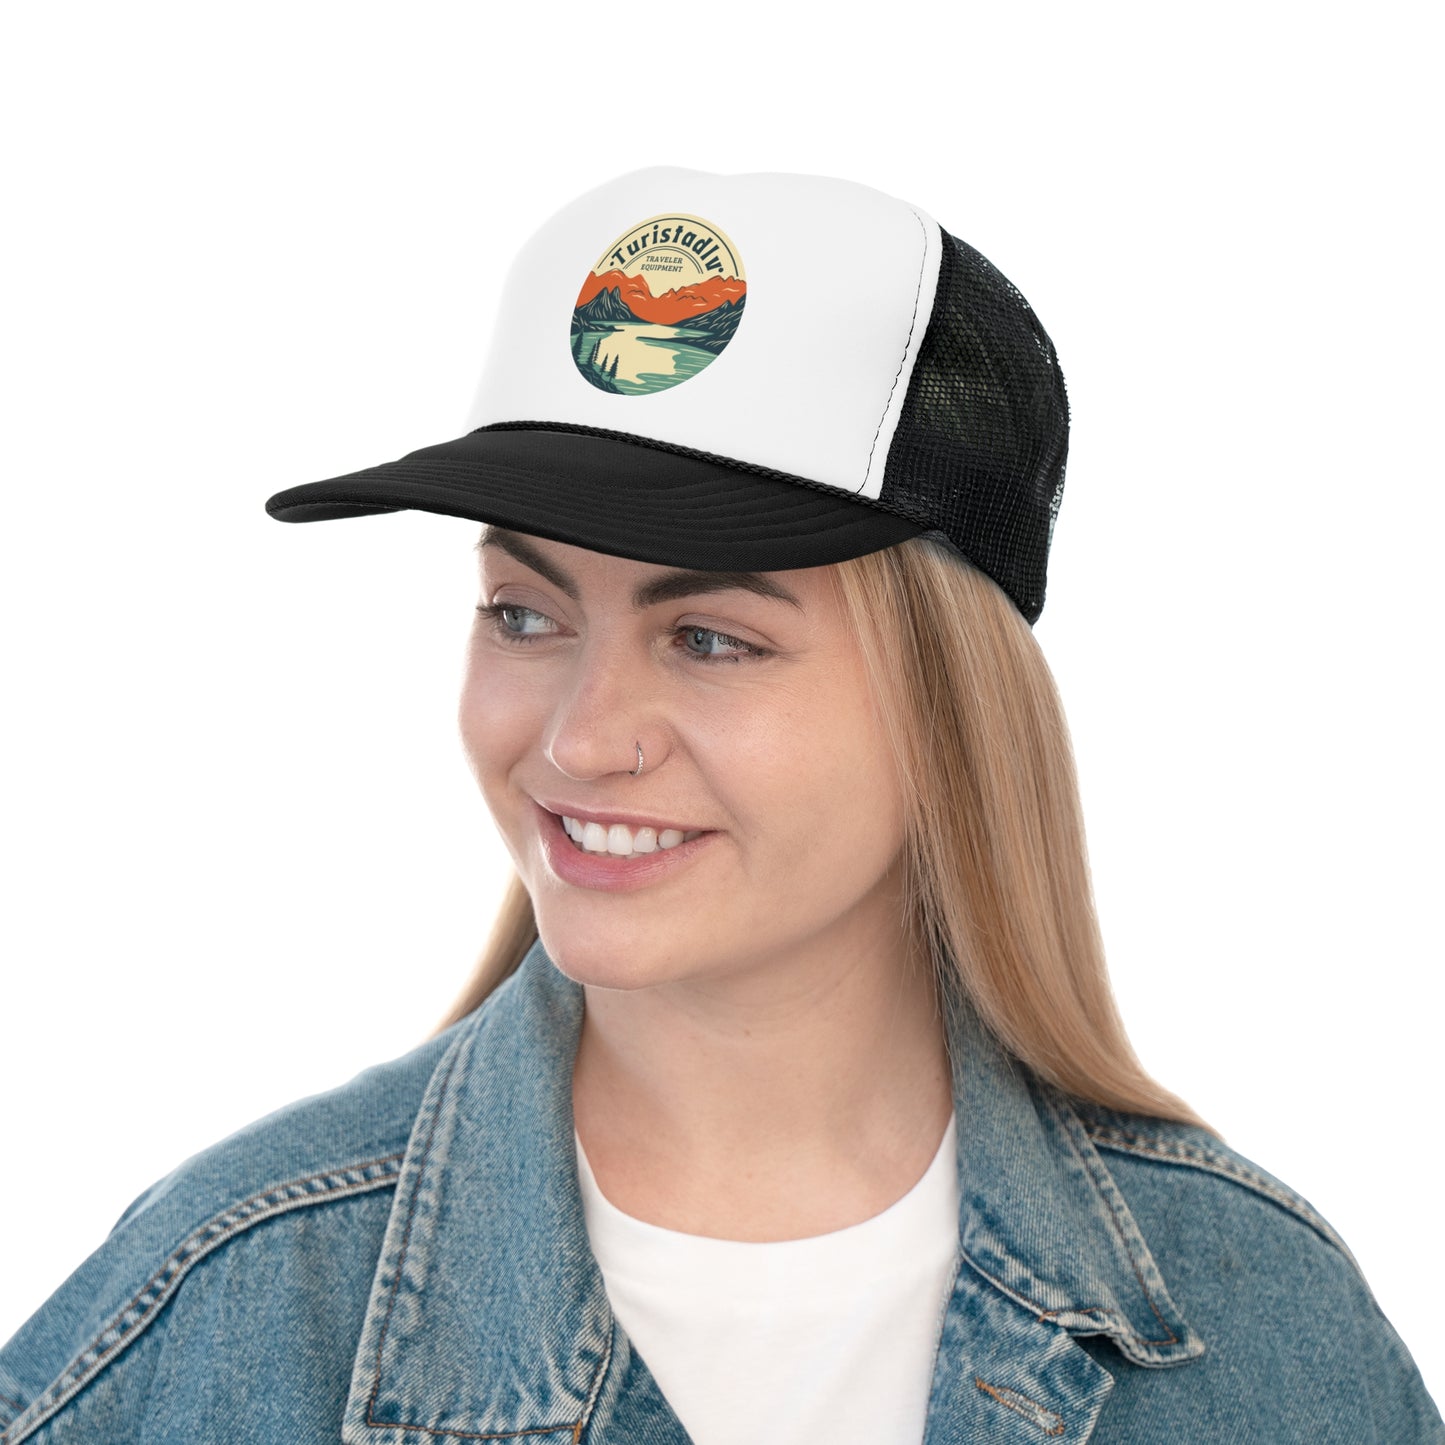 Gorra personalizada con tu logo, gorra viajero, gorra logo, gorra personalizable, gorra de logo, regalo personalizado, gorra de vacaciones